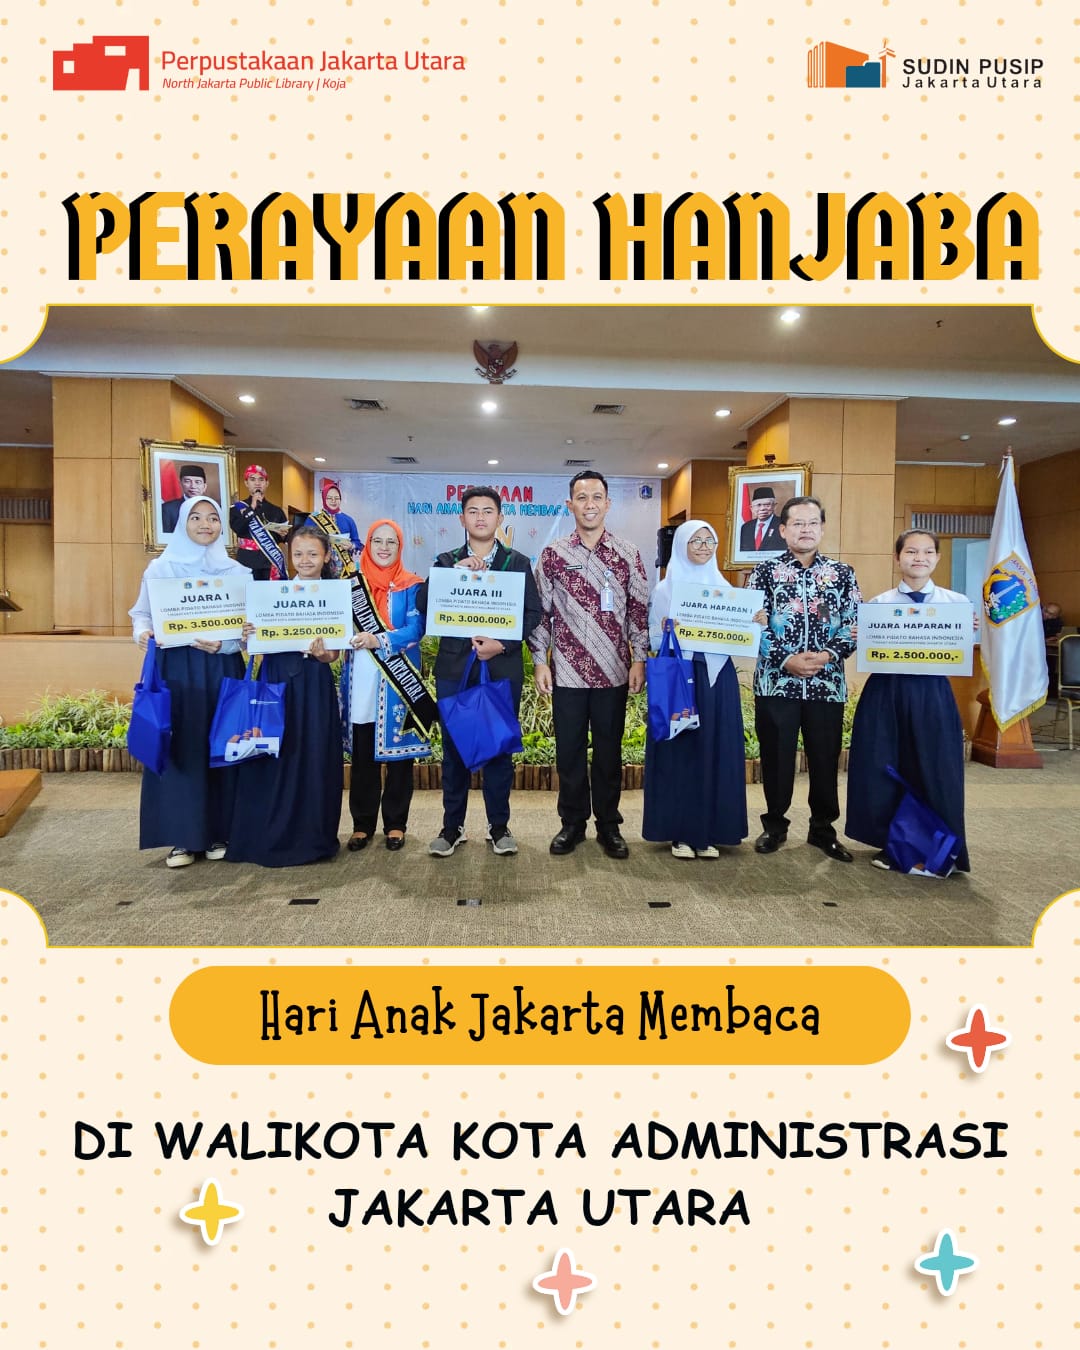 Perayaan Hari Anak Jakarta Membaca (HANJABA) Jakarta Utara